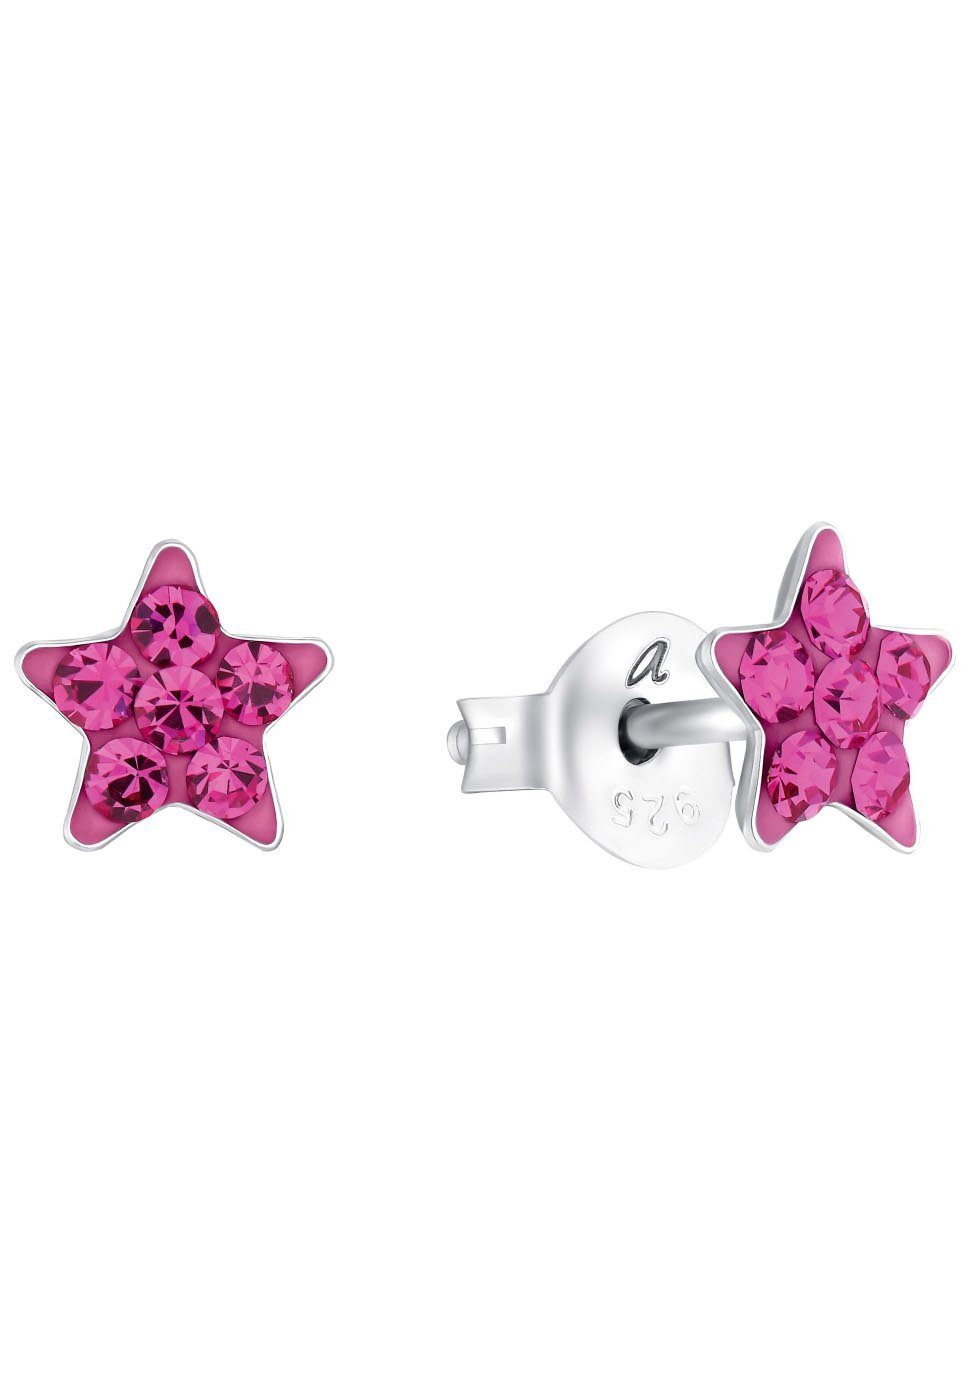 Amor silberfarben-pink 9209873, 9209880, Kristallglas Stern, Paar Ohrstecker mit